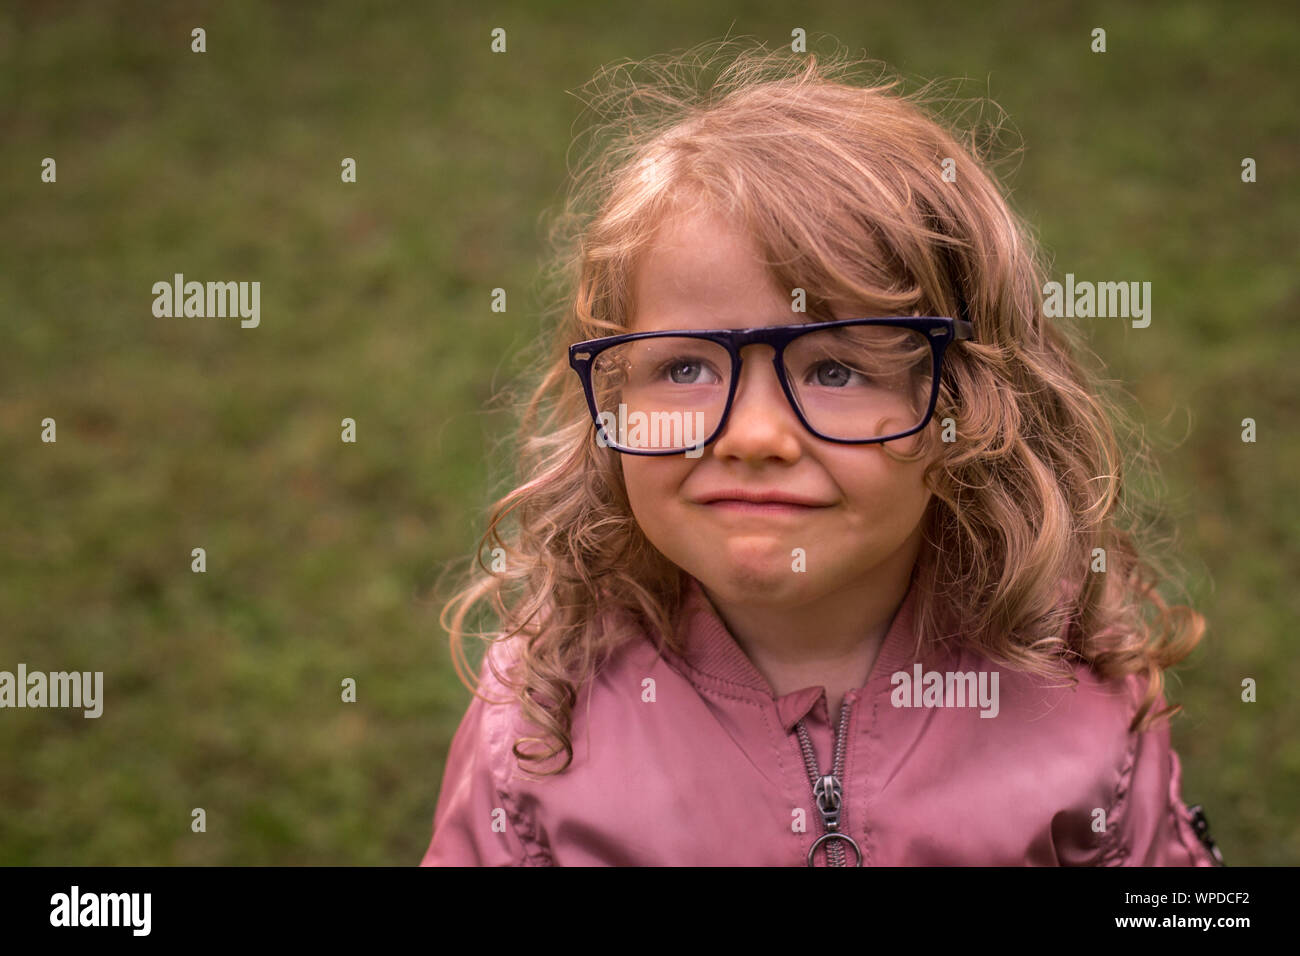 Petite fille adorable bambin souriant, avec des lunettes, trop grand pour sa taille, prix pour votre texte Banque D'Images